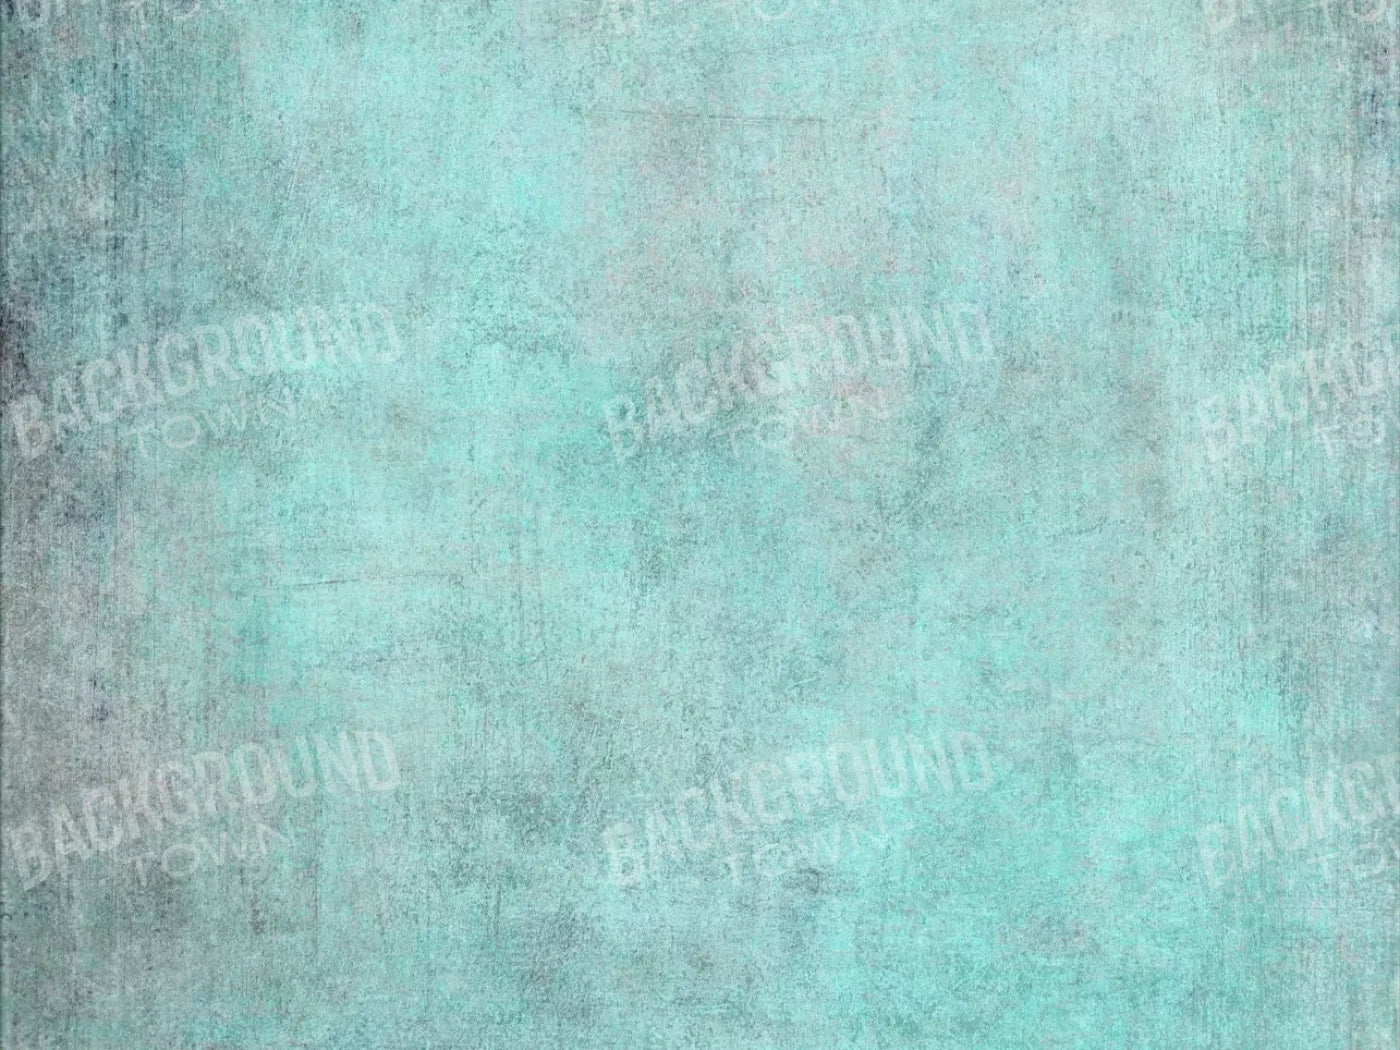 Grunge Seafoam 7X5 Ultracloth ( 84 X 60 Inch ) Backdrop